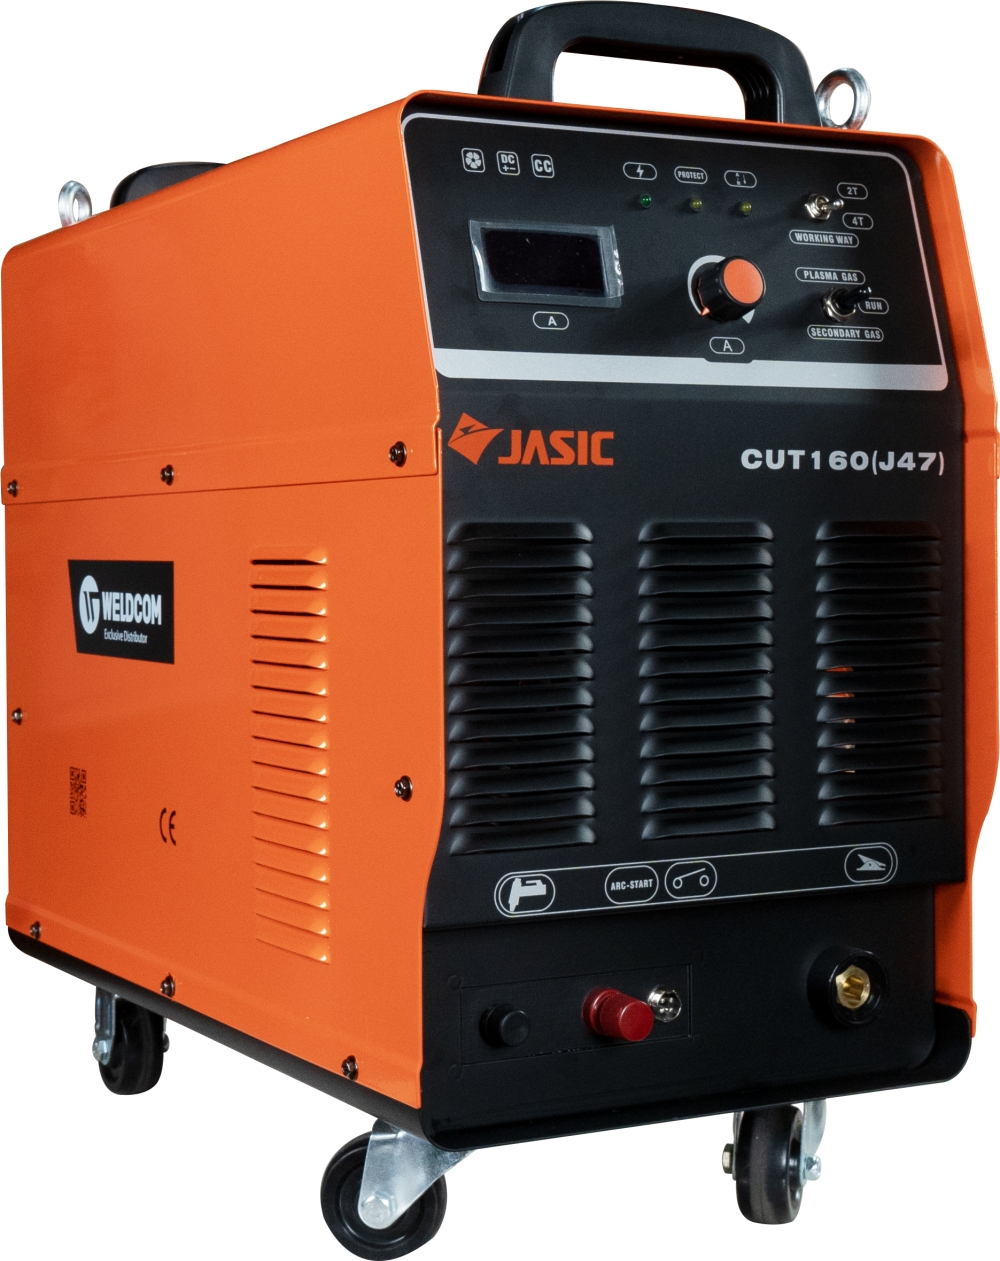 Máy cắt kim loại công nghệ hồ quang Plasma JASIC CUT-160 (J47)